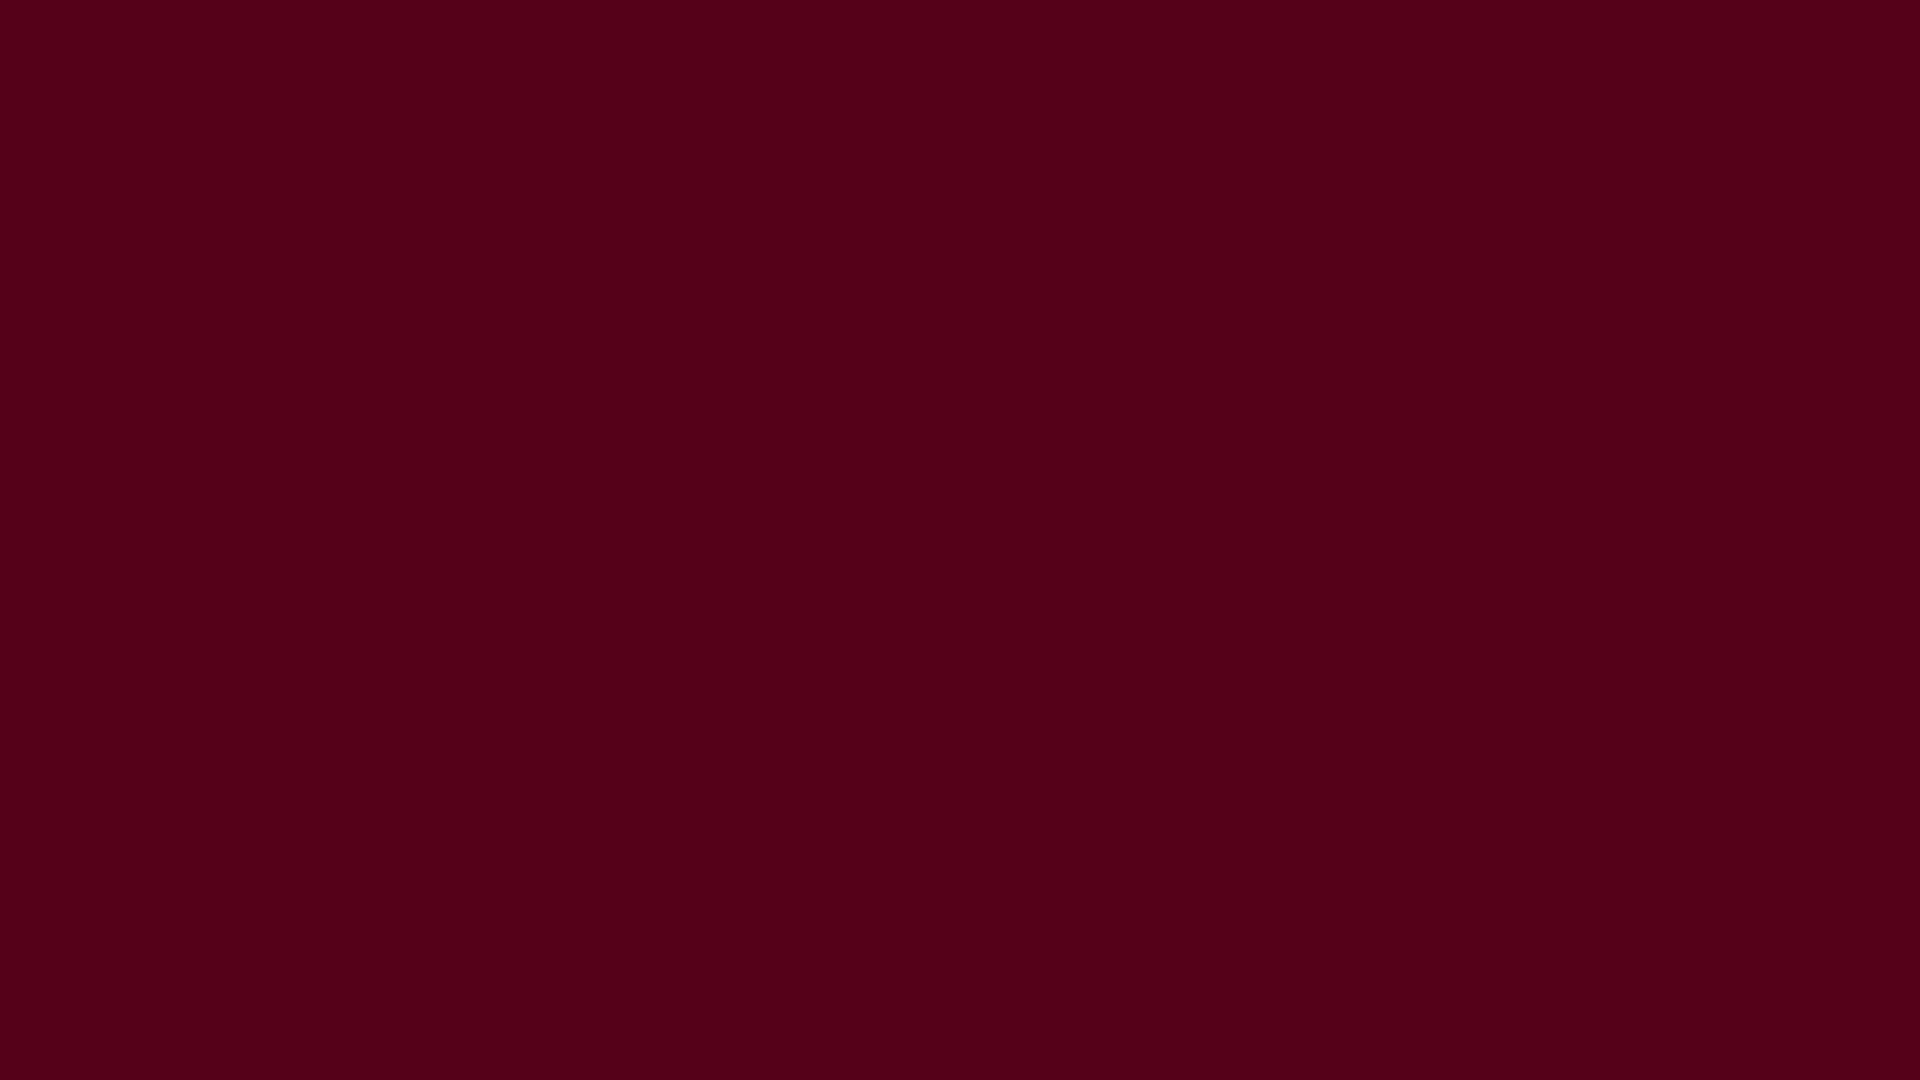 1920x1080 Dark Scarlet Solid Color Background